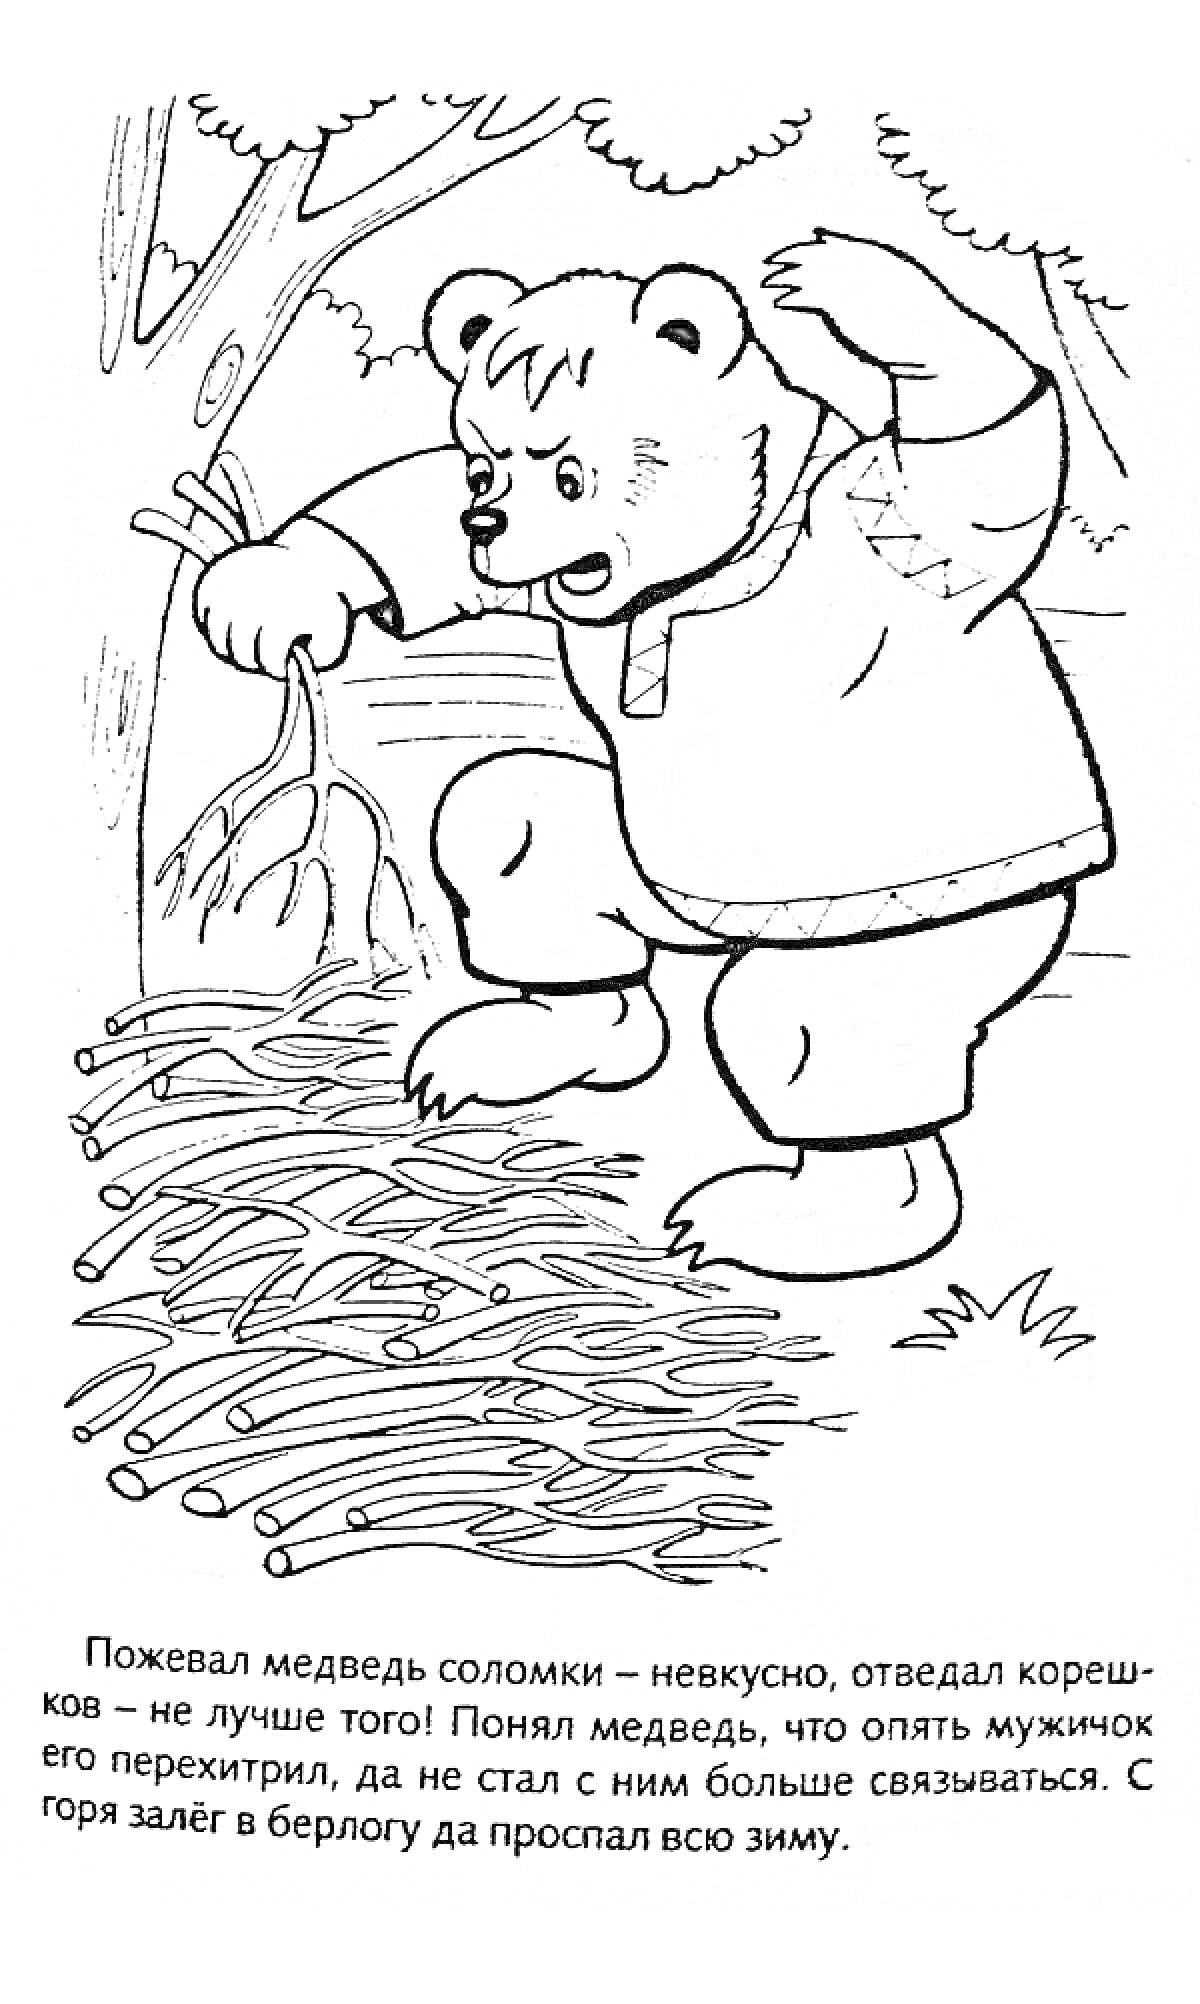 Раскраска Медведь у костра с корешками и соломой в лесу на фоне деревьев